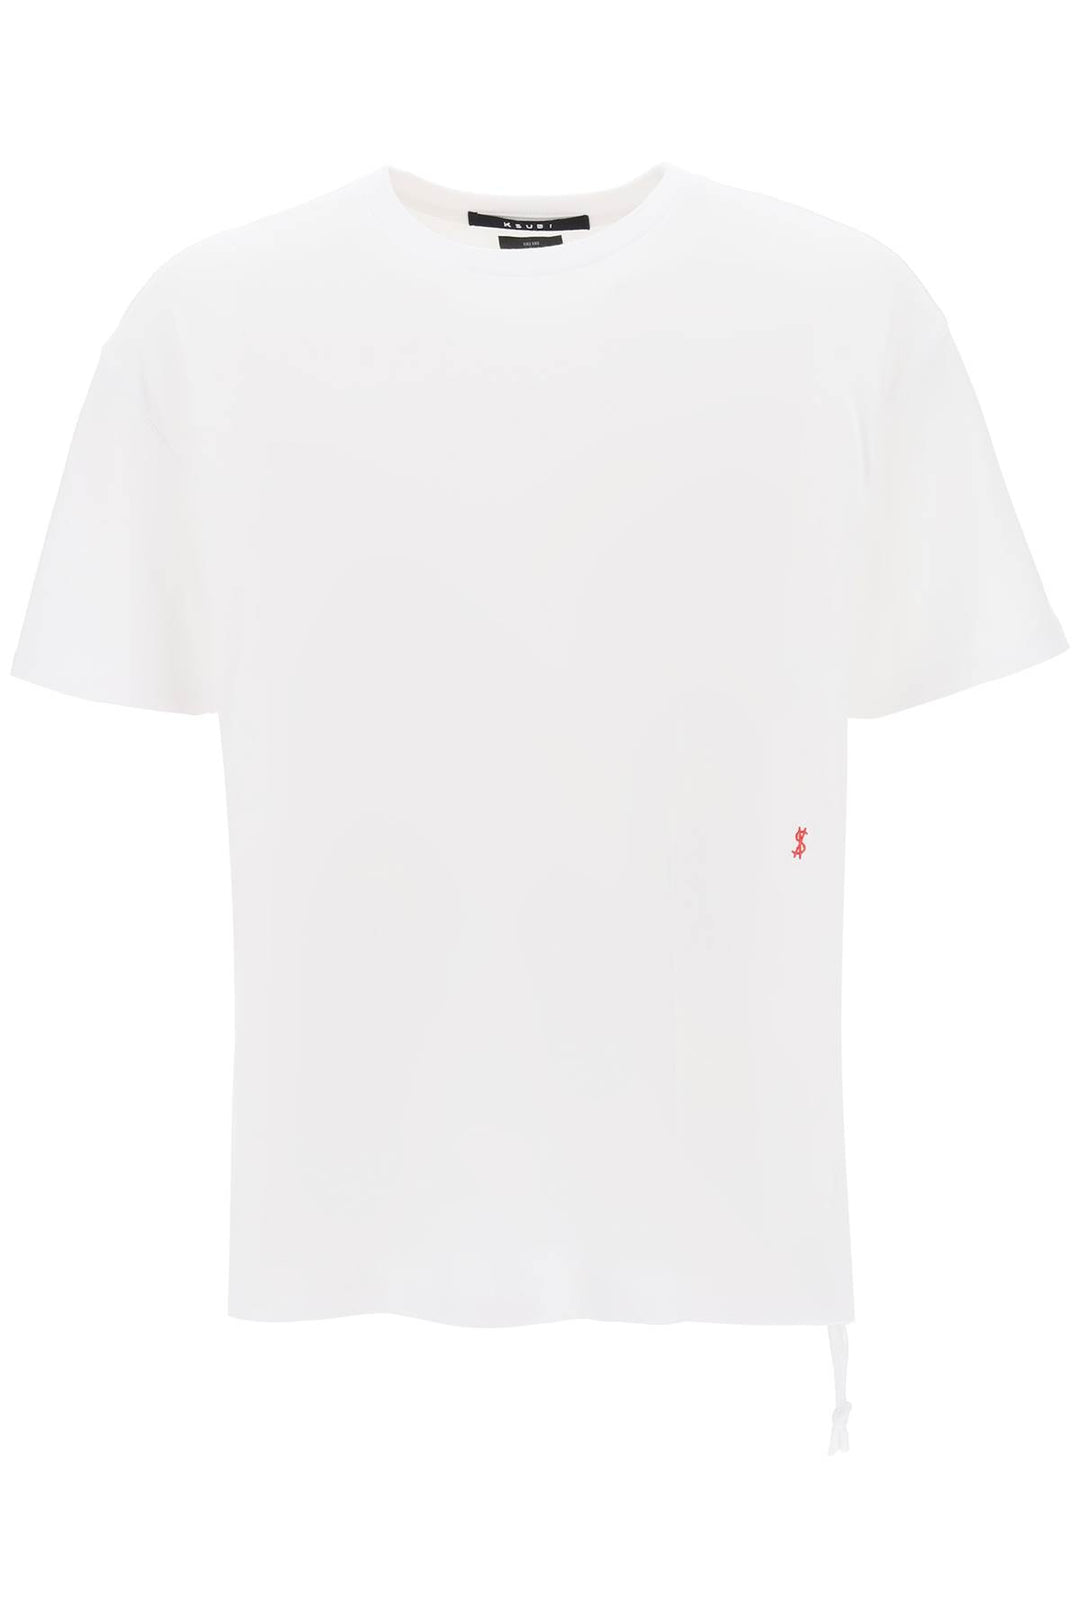 T Shirt '4 X4 Biggie' - Ksubi - Uomo